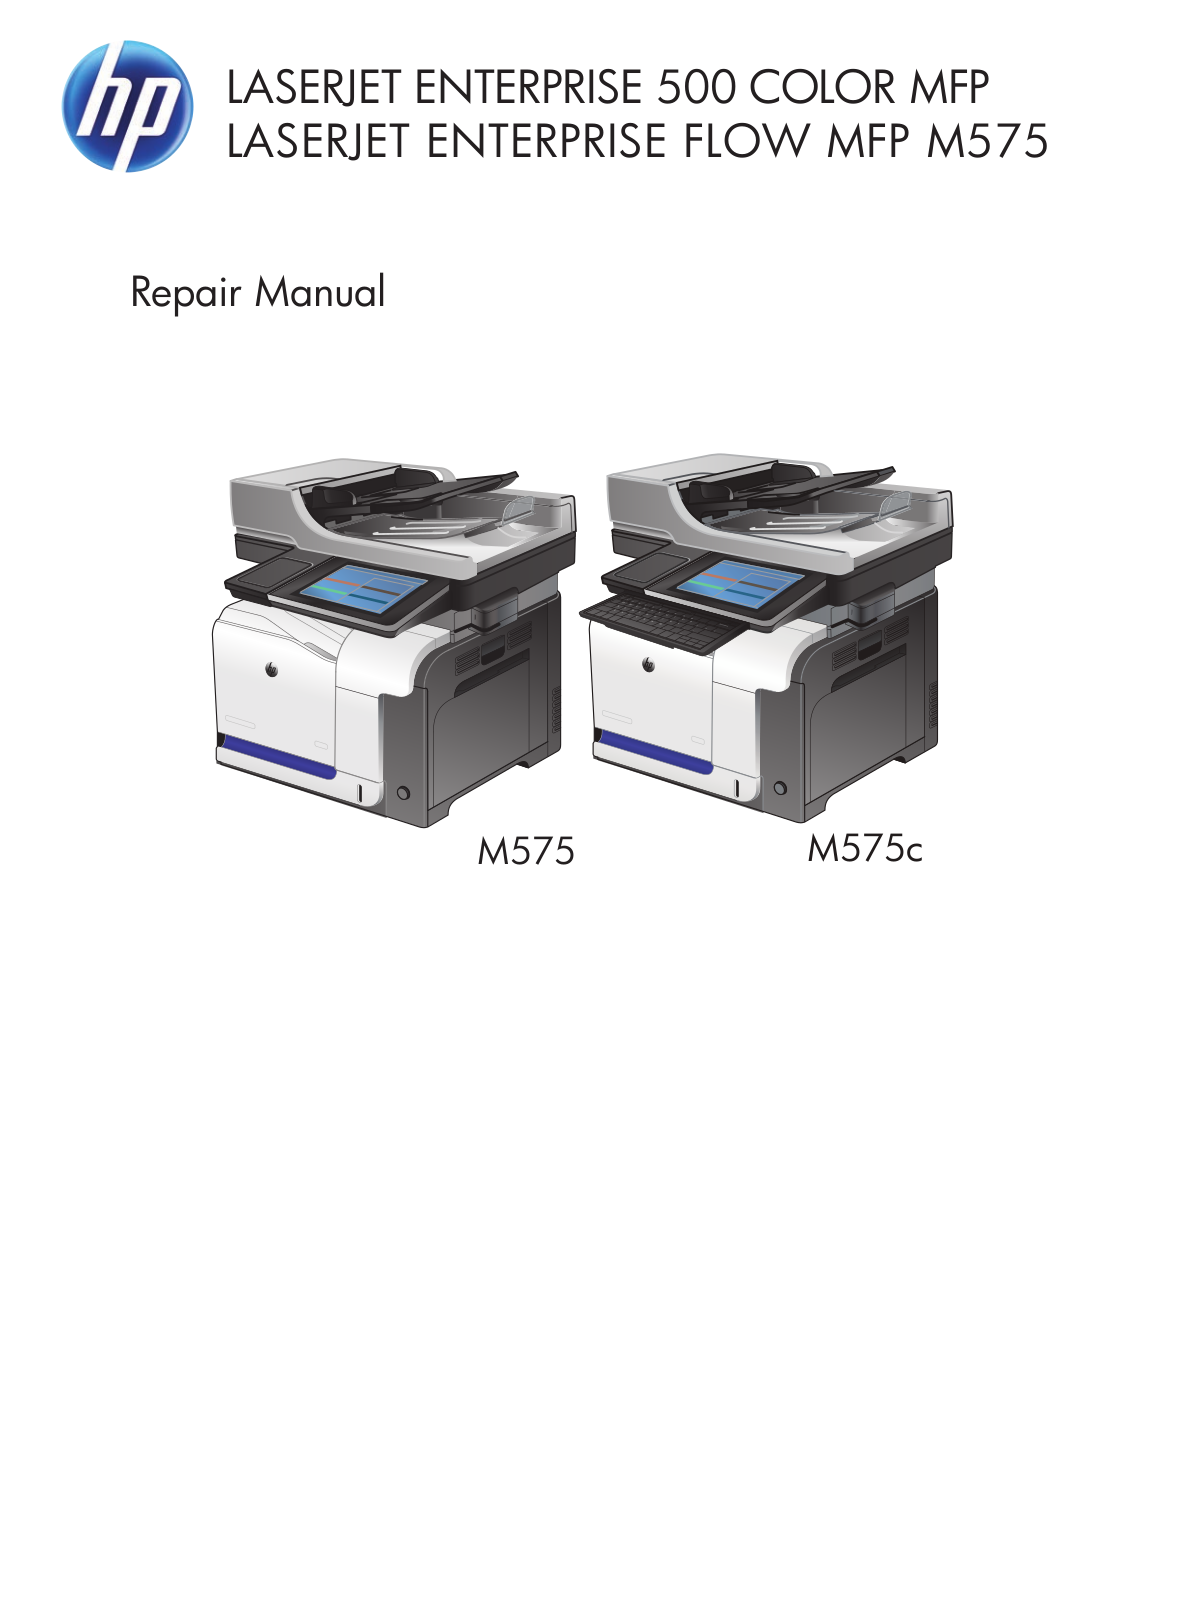 HP Color Laserjet M575 repair manual